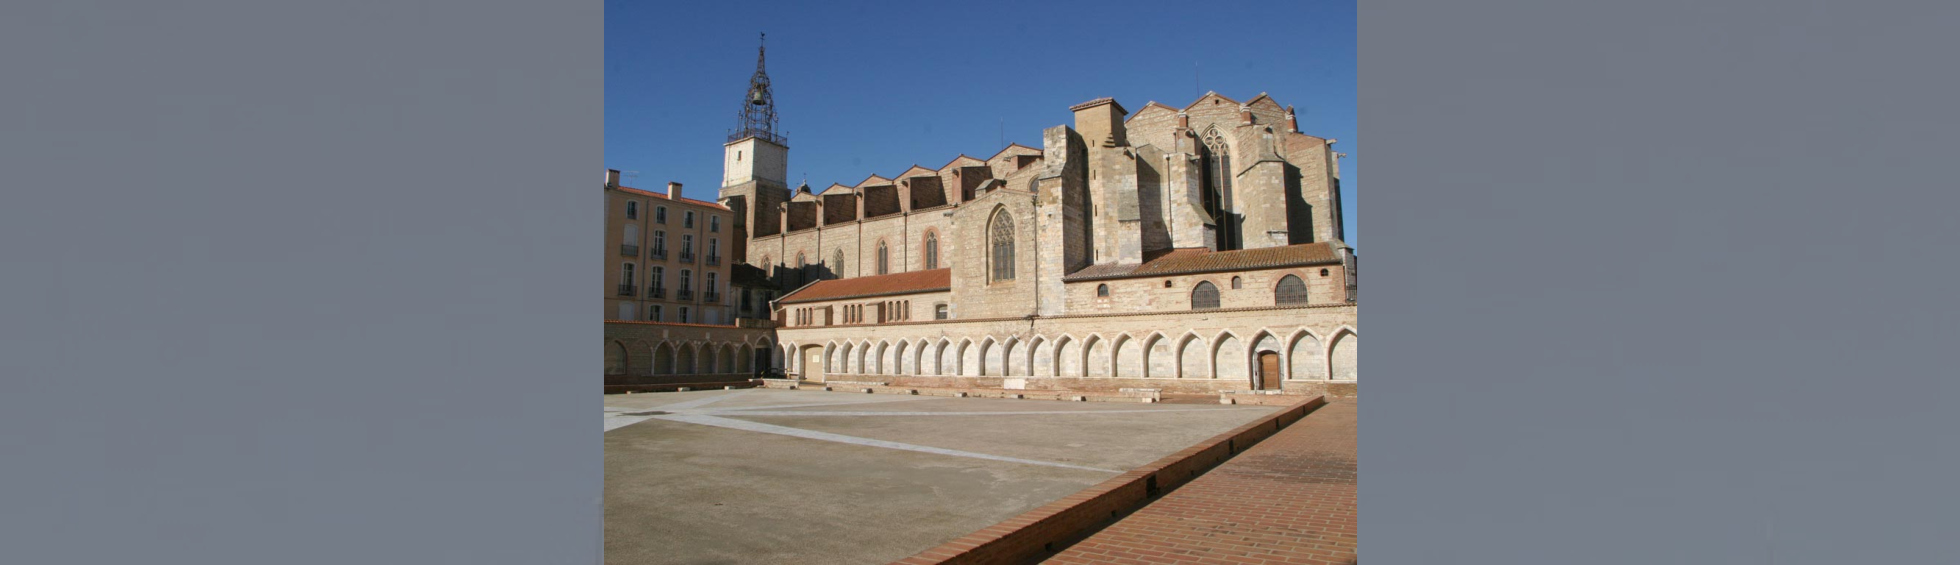 La cathédrale Saint-Jean-Baptiste